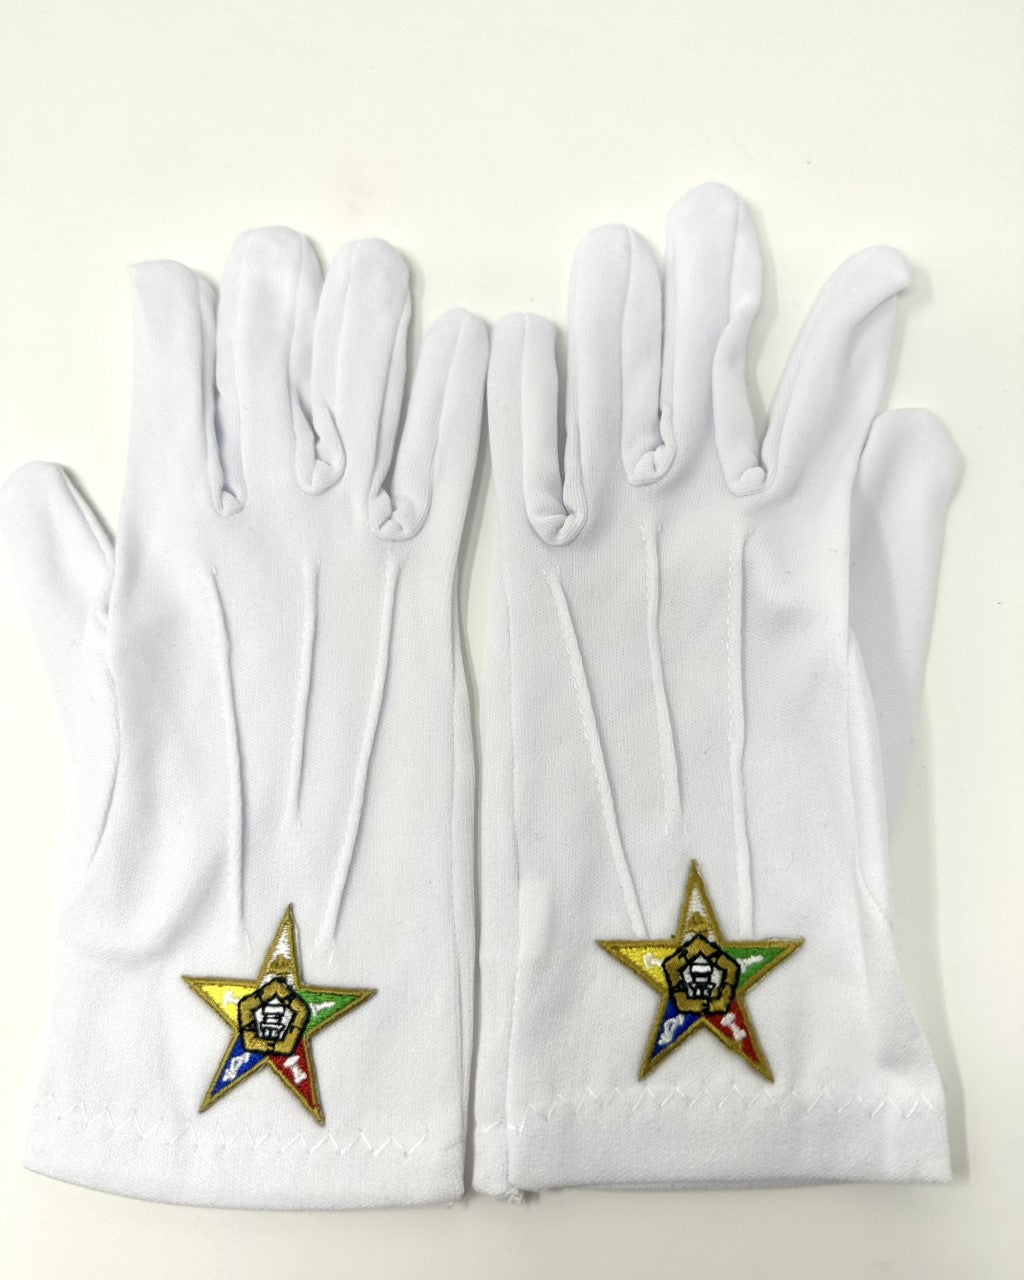 Order of Eastern Star Emblem Gloves